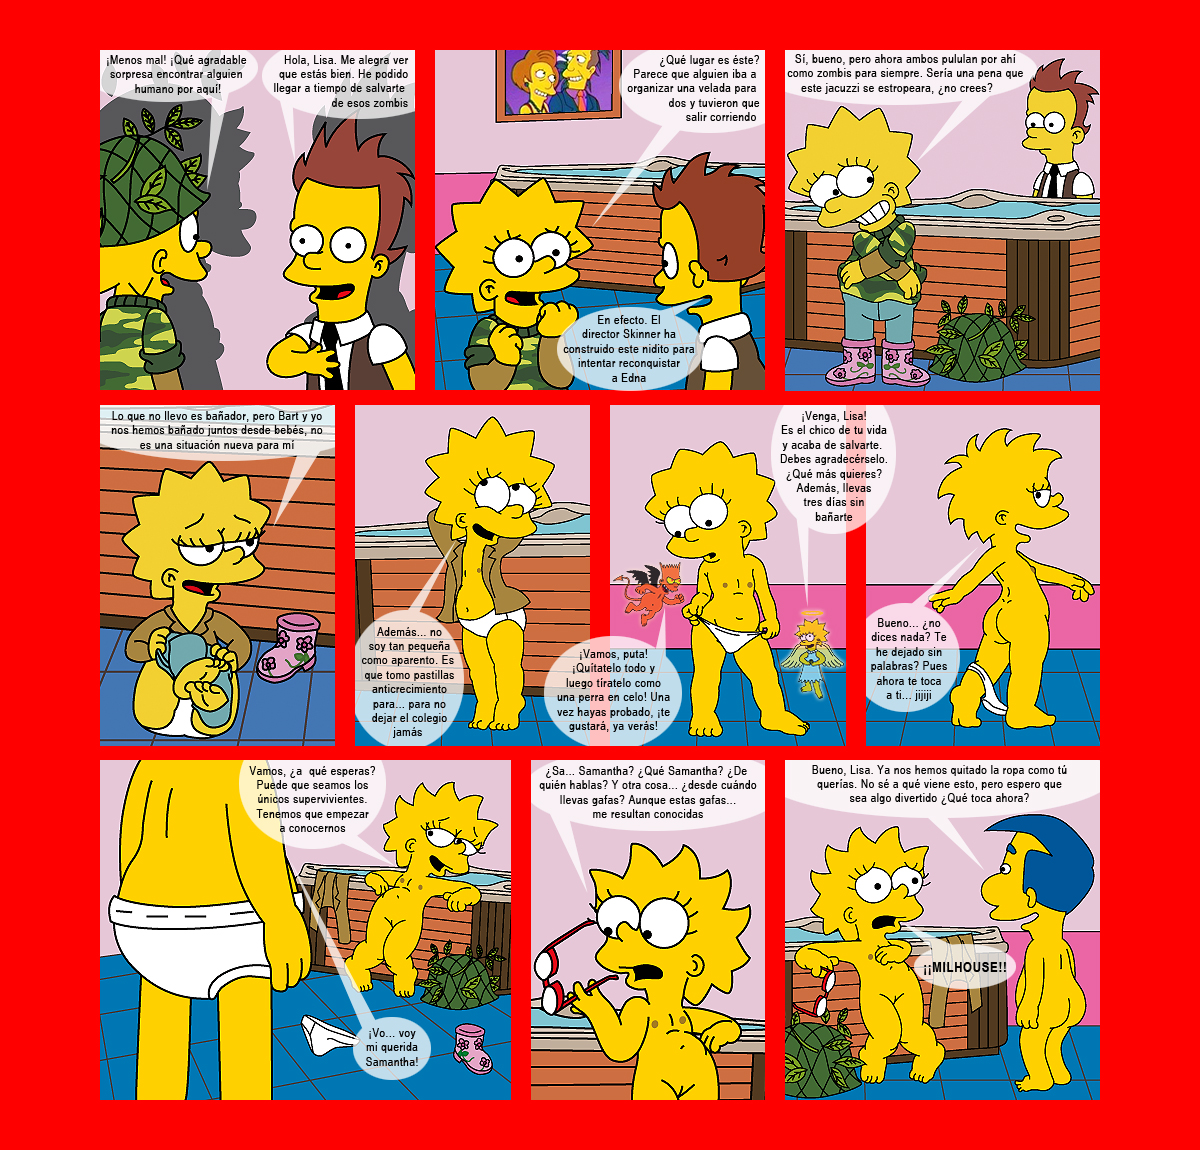 Порно Комикс Сестры Симпсоны